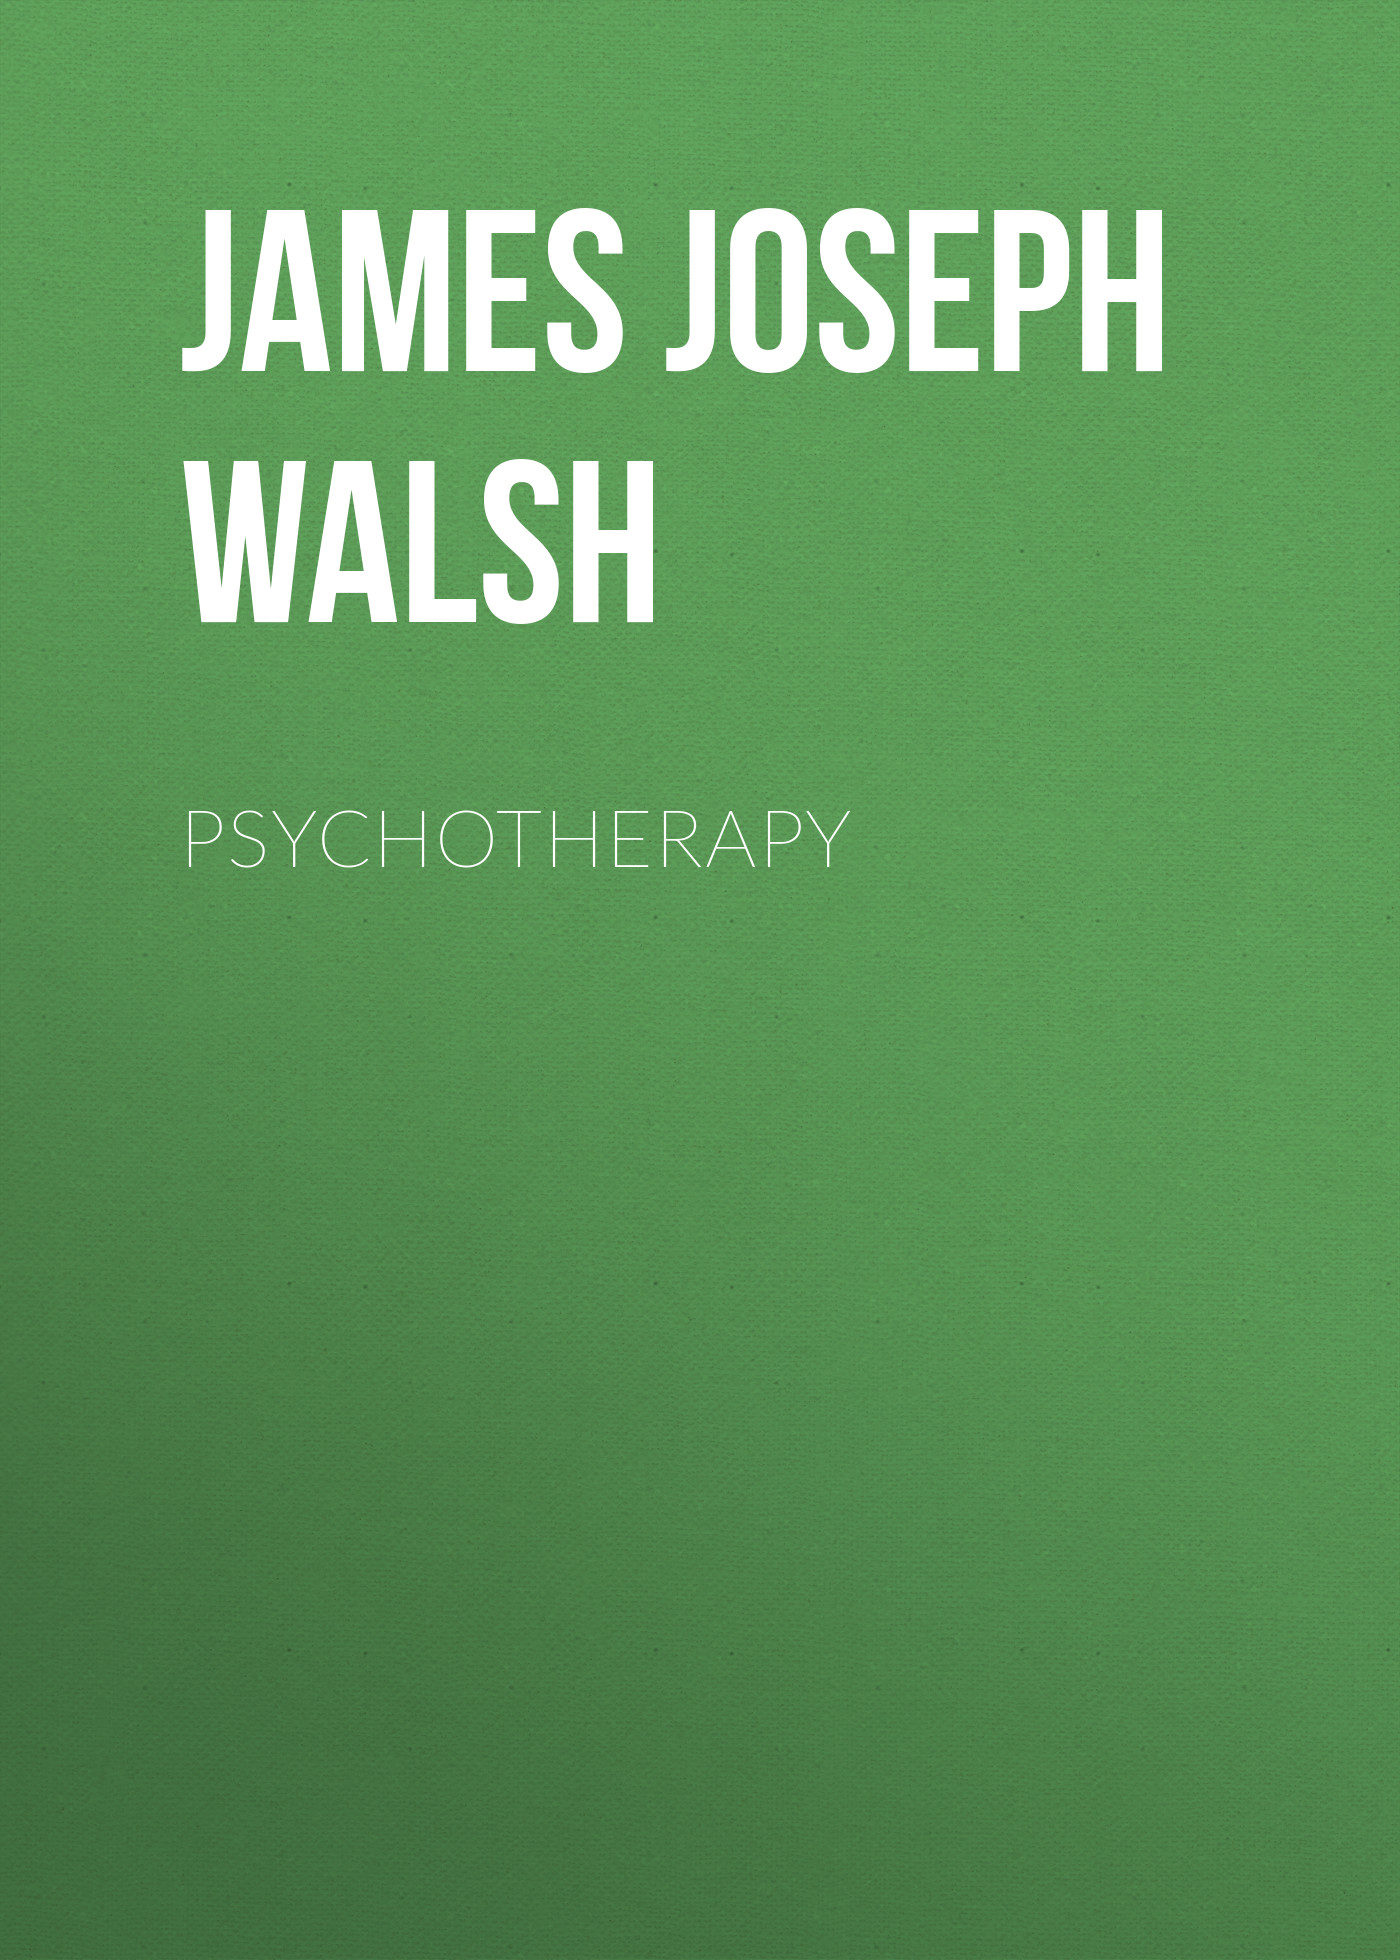 Книга Psychotherapy из серии , созданная James Walsh, может относится к жанру Зарубежная классика, Психотерапия и консультирование, Зарубежная образовательная литература, Зарубежная старинная литература. Стоимость электронной книги Psychotherapy с идентификатором 34282864 составляет 0 руб.